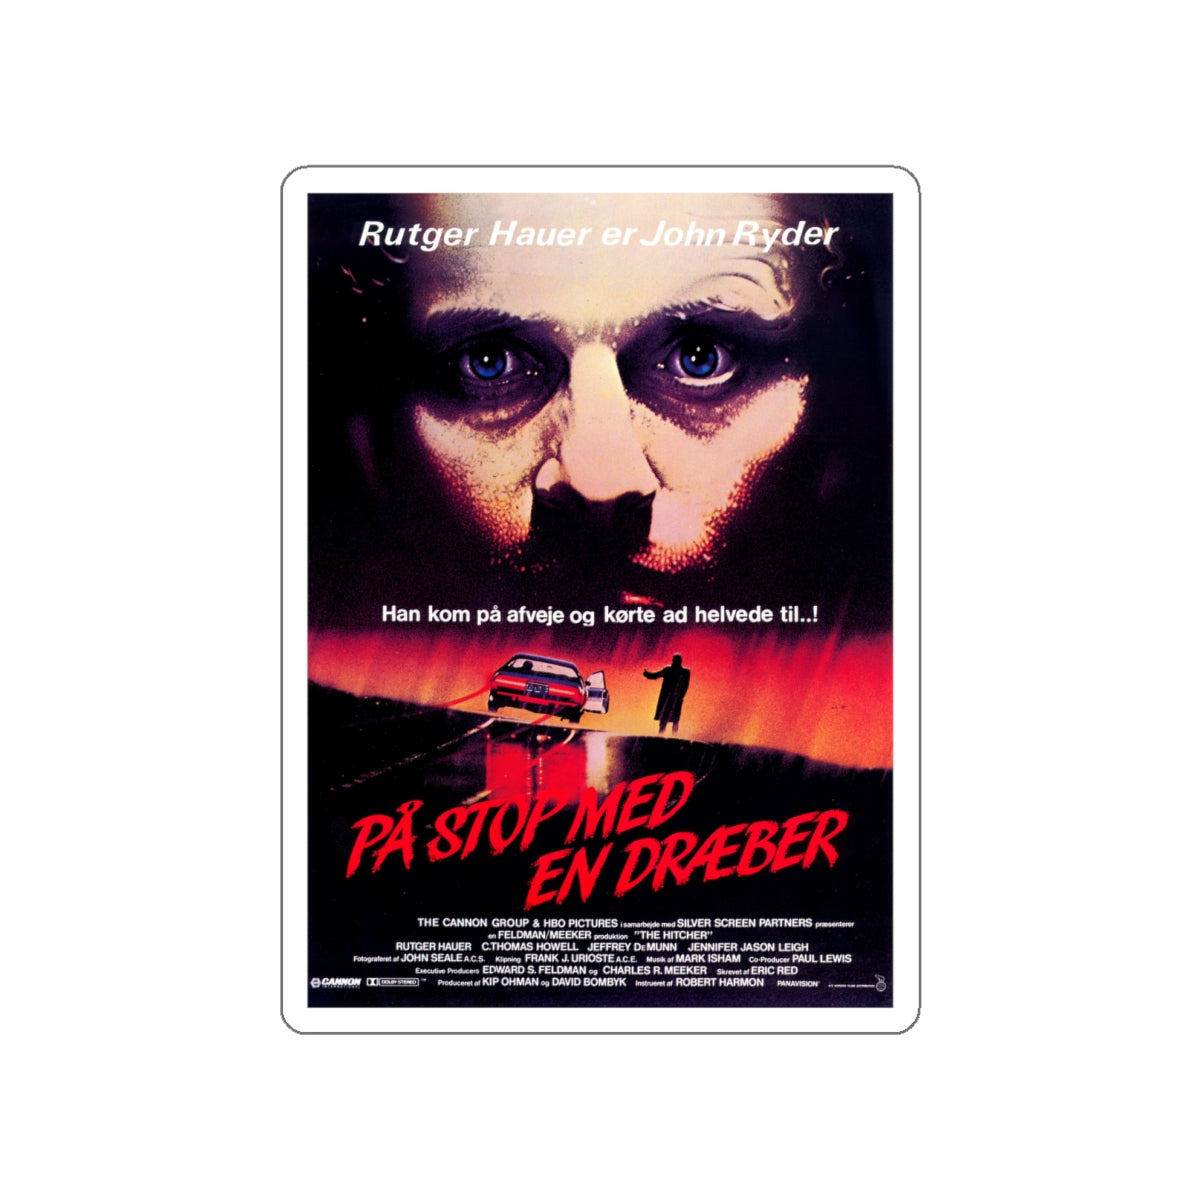 THE HITCHER (DANISH) 1986 Movie Poster STICKER Vinyl Die-Cut Decal-White-The Sticker Space